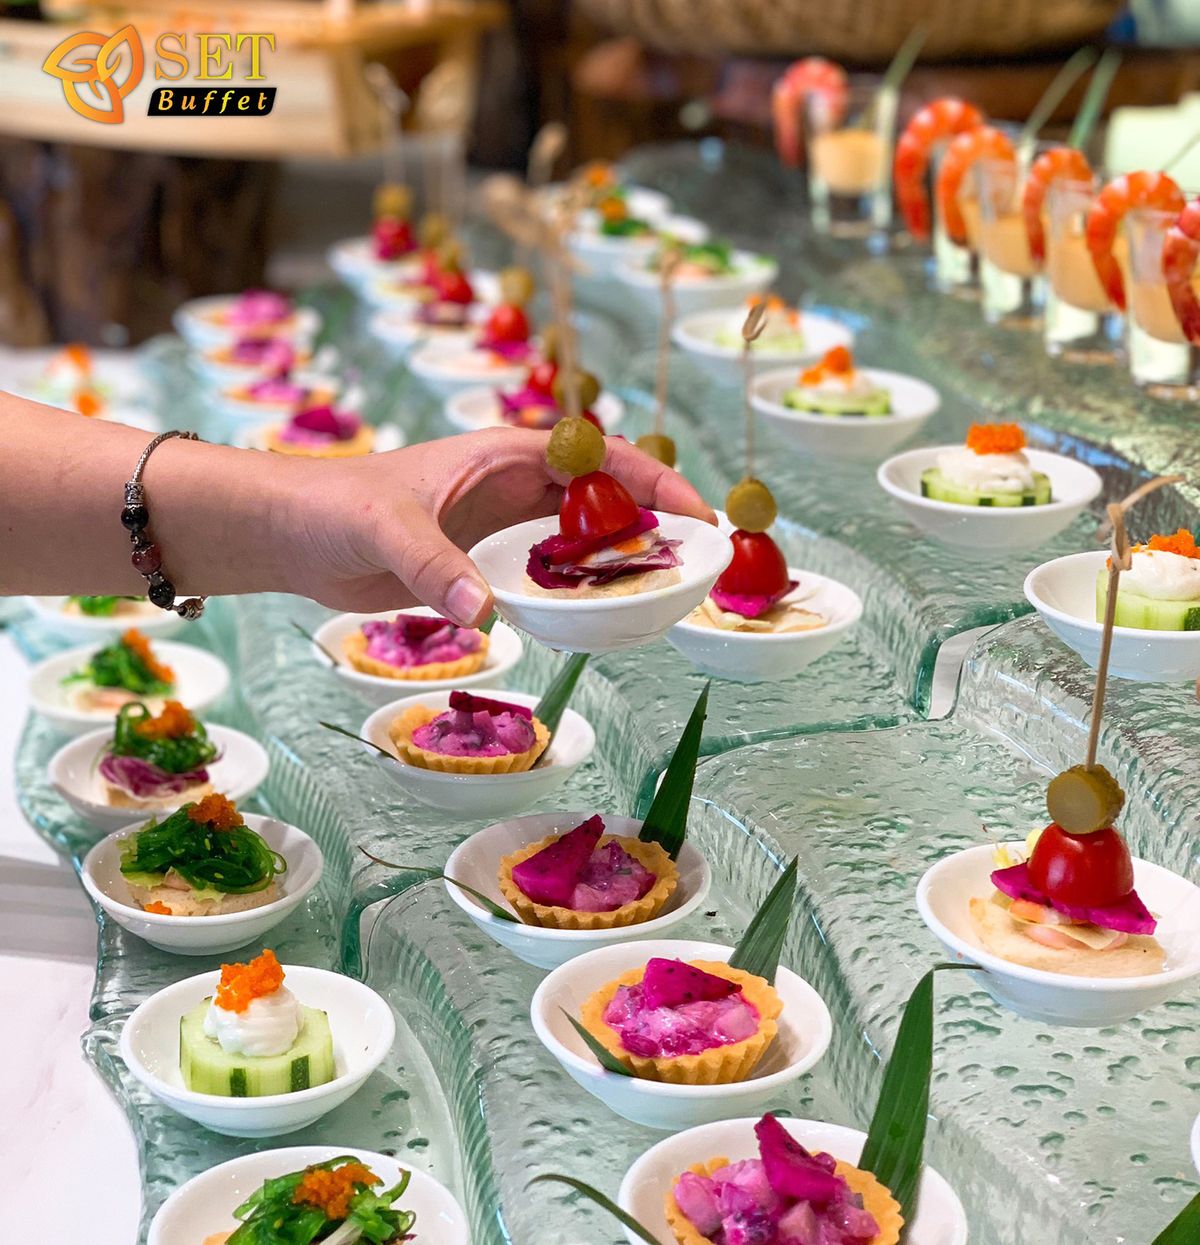 SET Buffet - Nơi thưởng thức hải sản thượng hạng tại Hà Nội 10